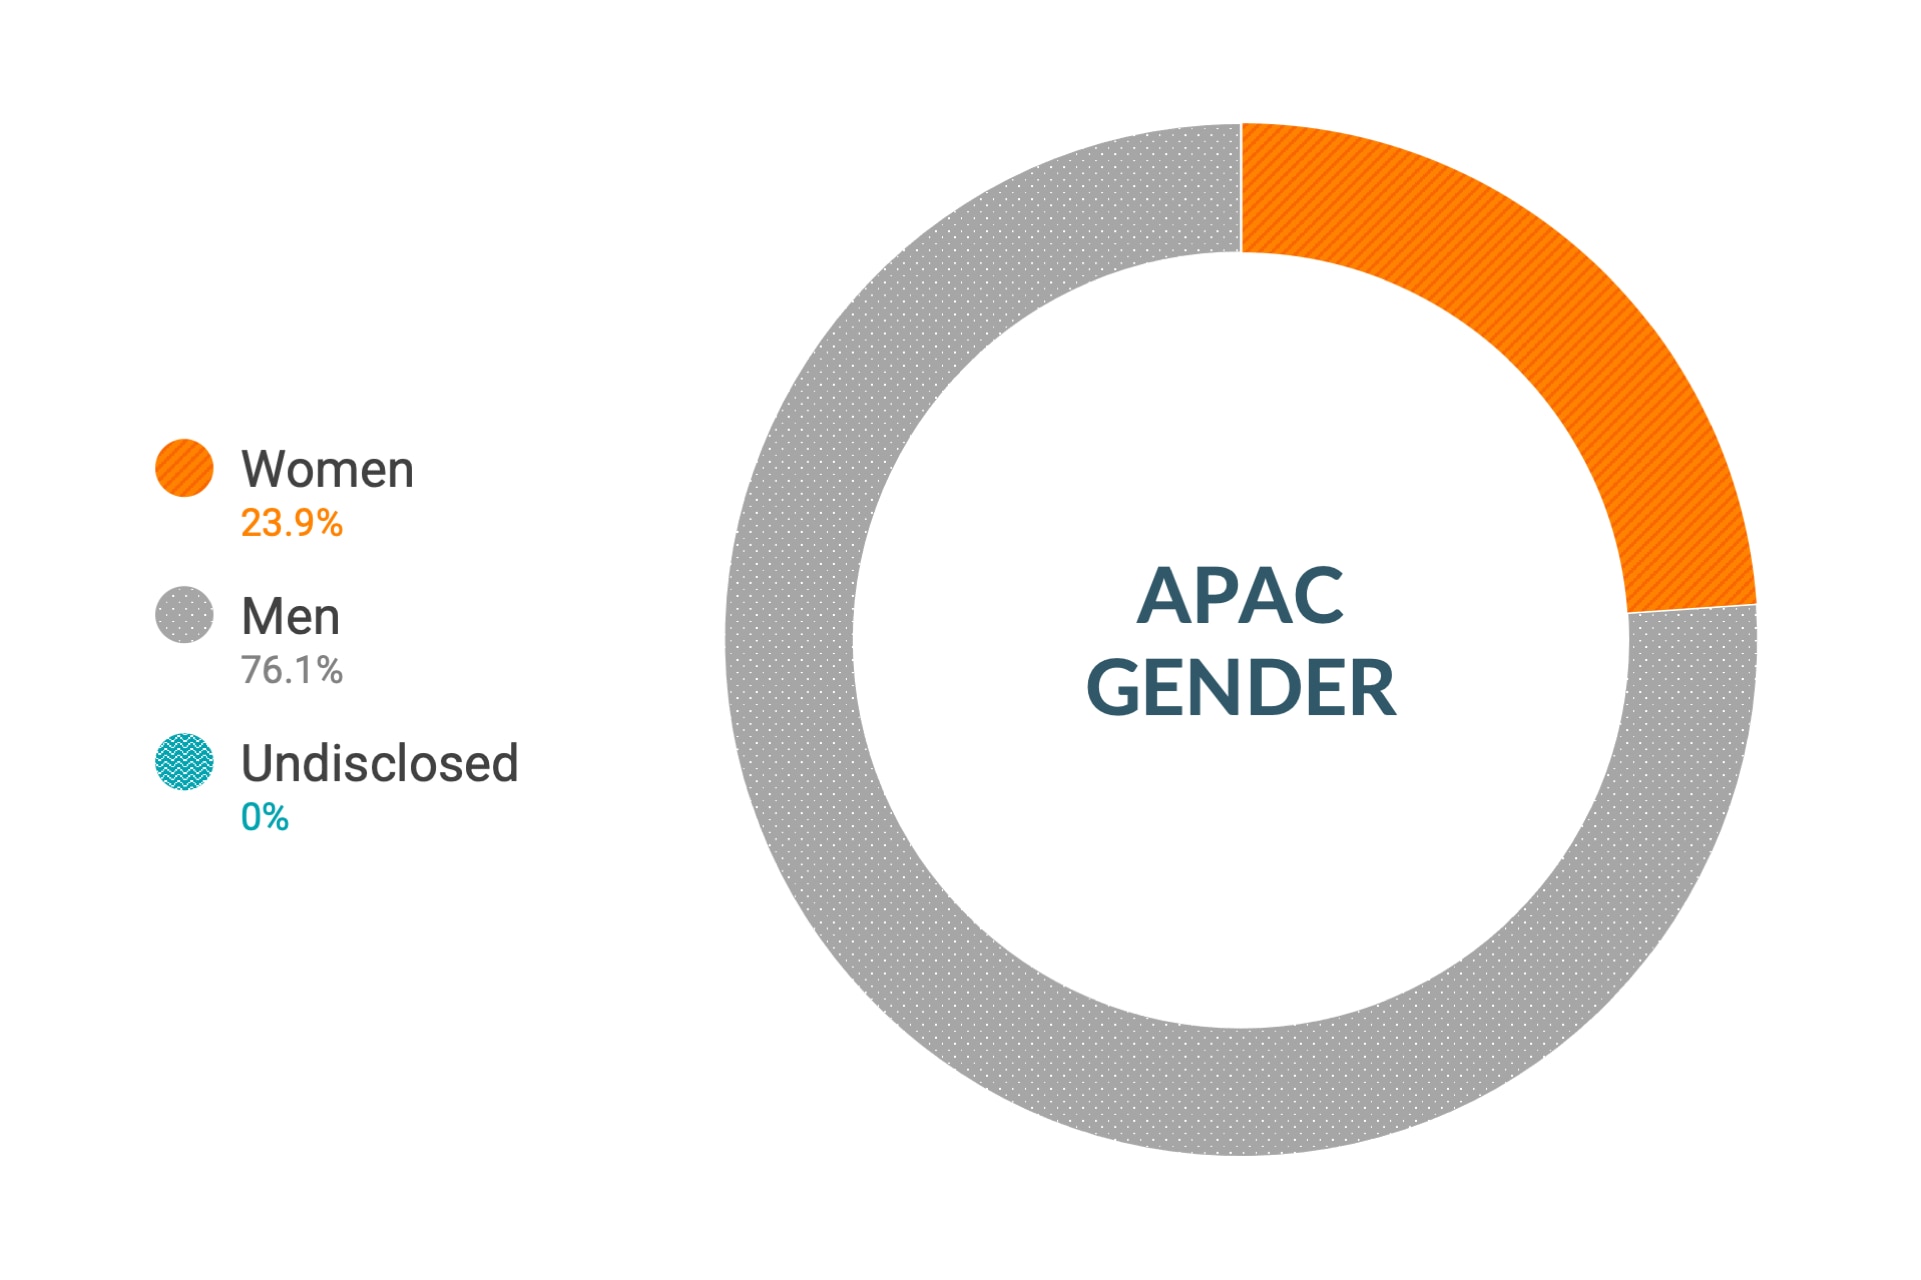 Dane firmy Cloudera dotyczące różnorodności i integracji dla płci w regionie Azji i Pacyfiku: kobiety 26%, mężczyźni 74%